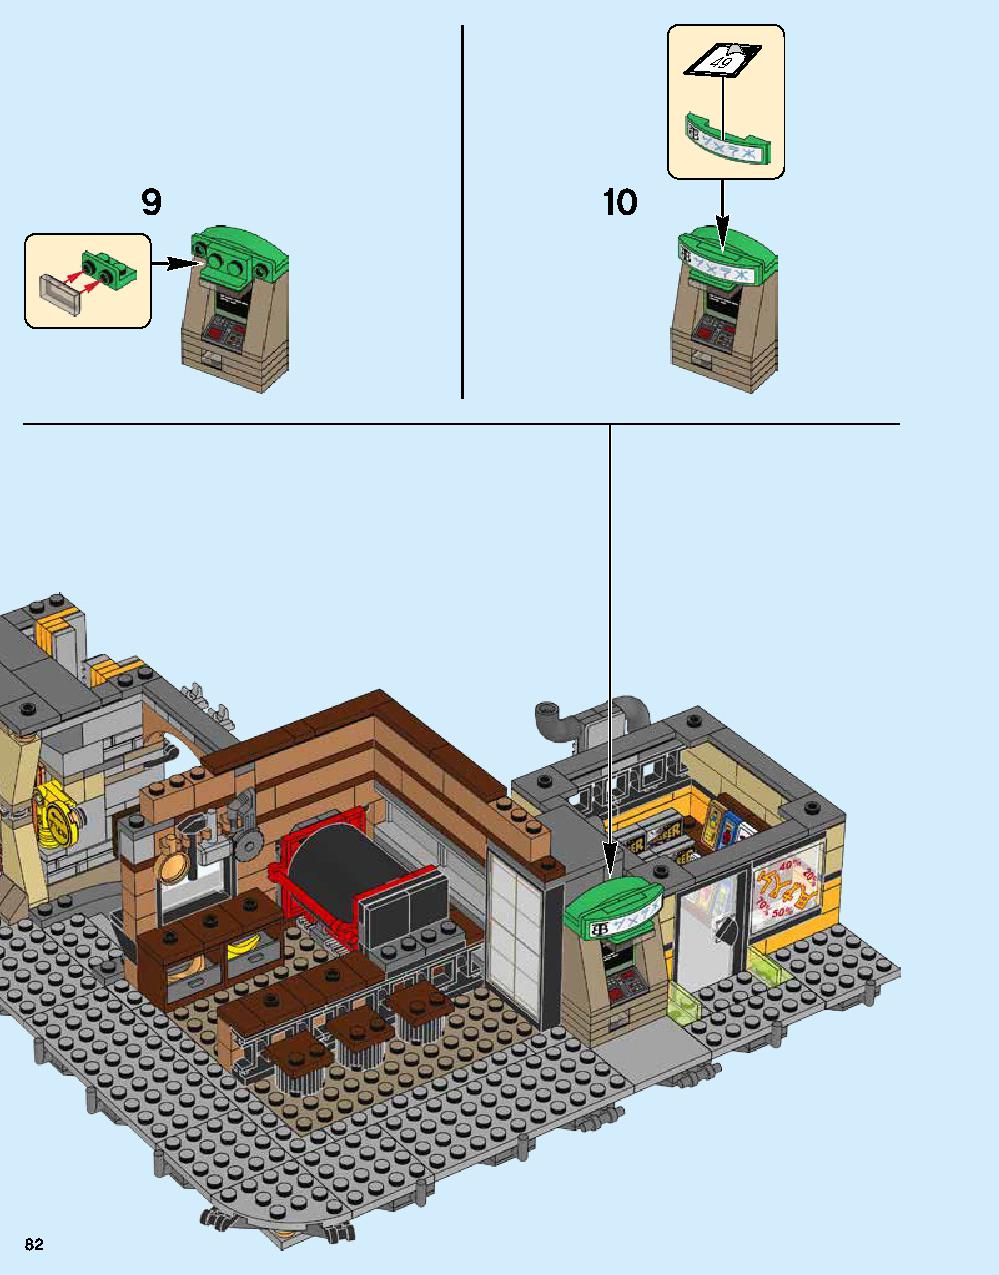 ニンジャゴー シティ 70620 レゴの商品情報 レゴの説明書・組立方法 82 page